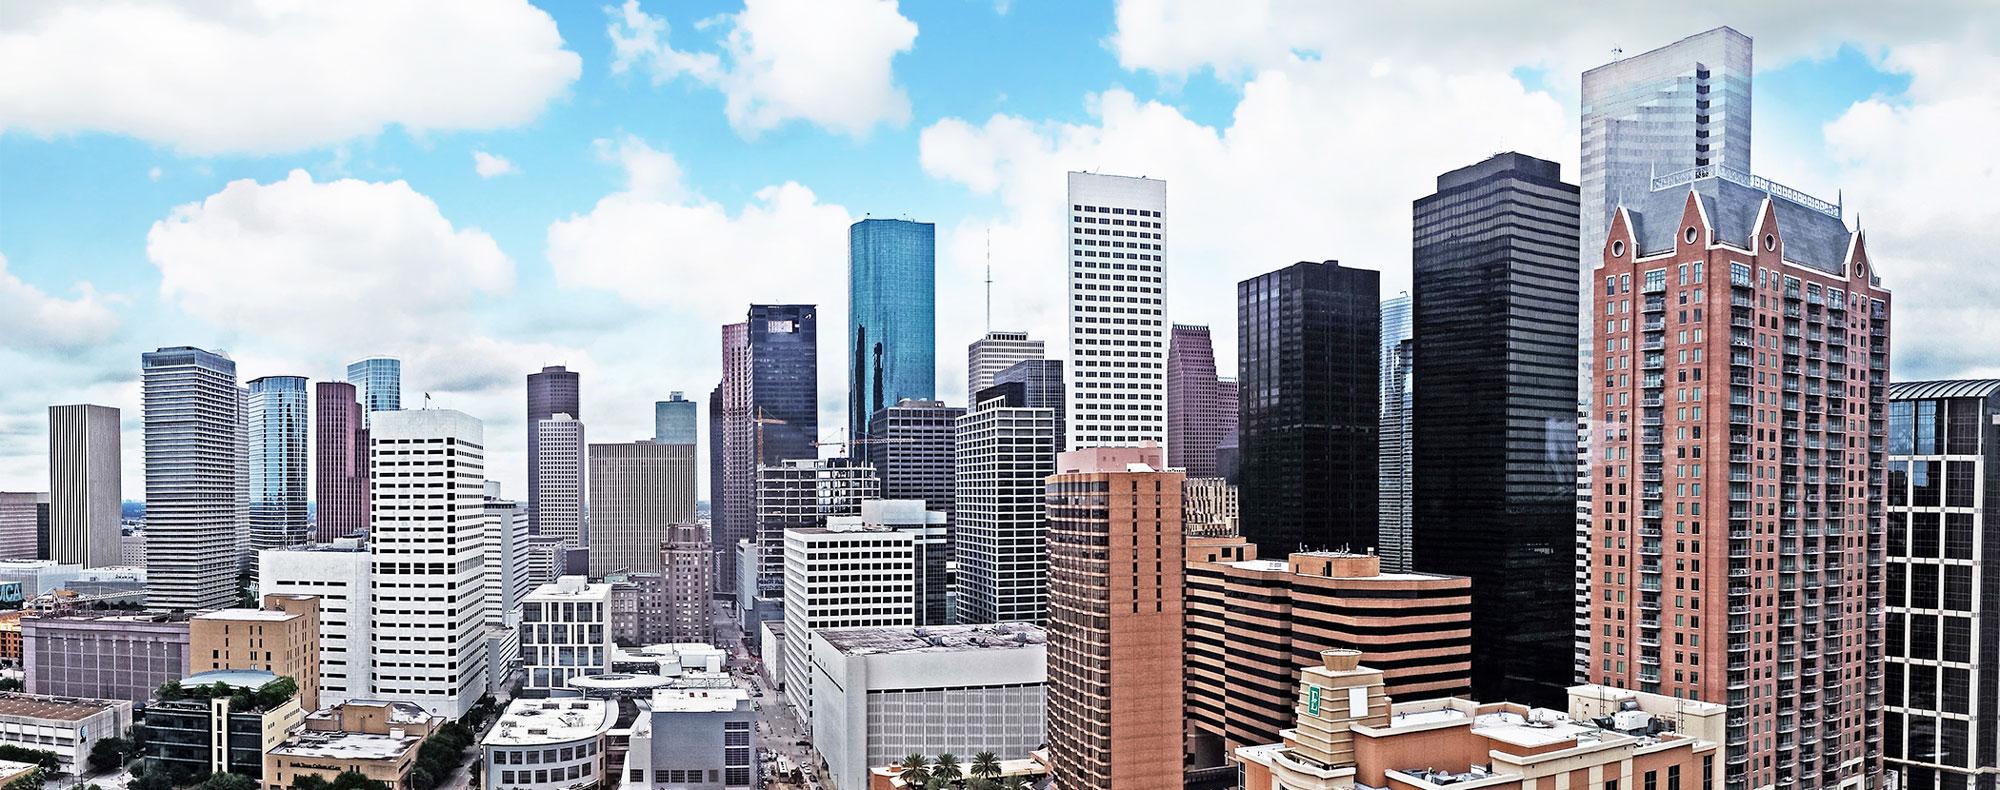 Houston Downtown skyline